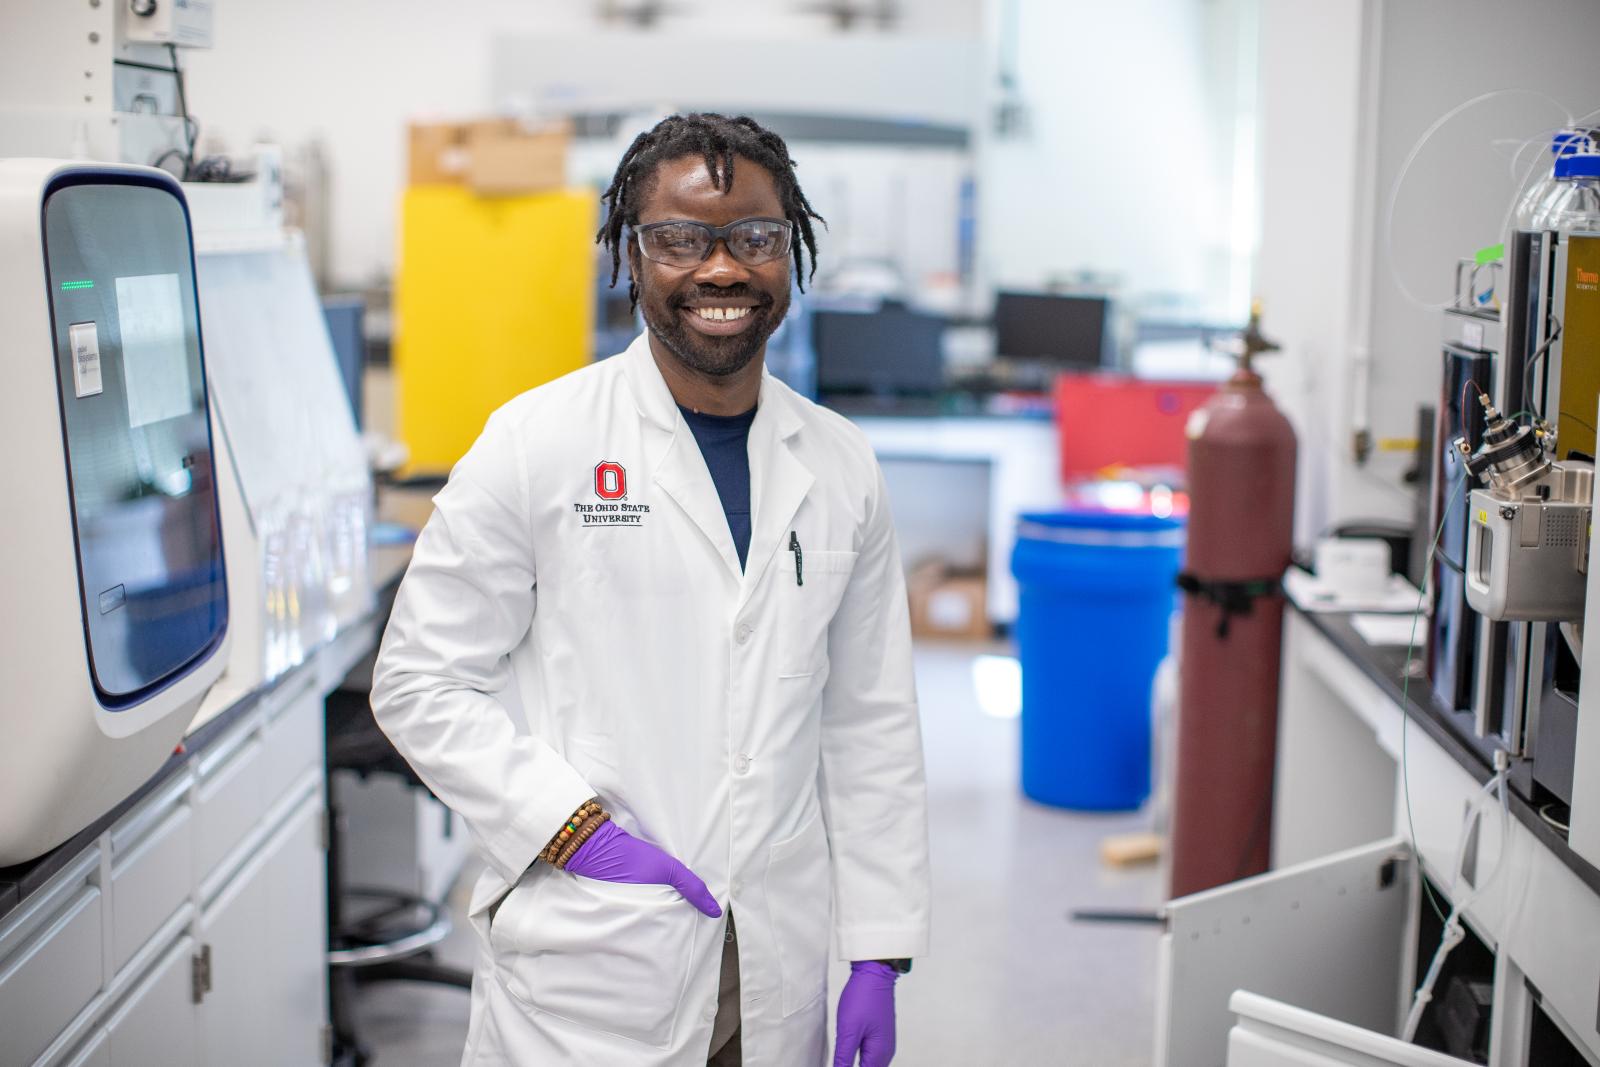 Dr. Adu-Ampratwum in the lab